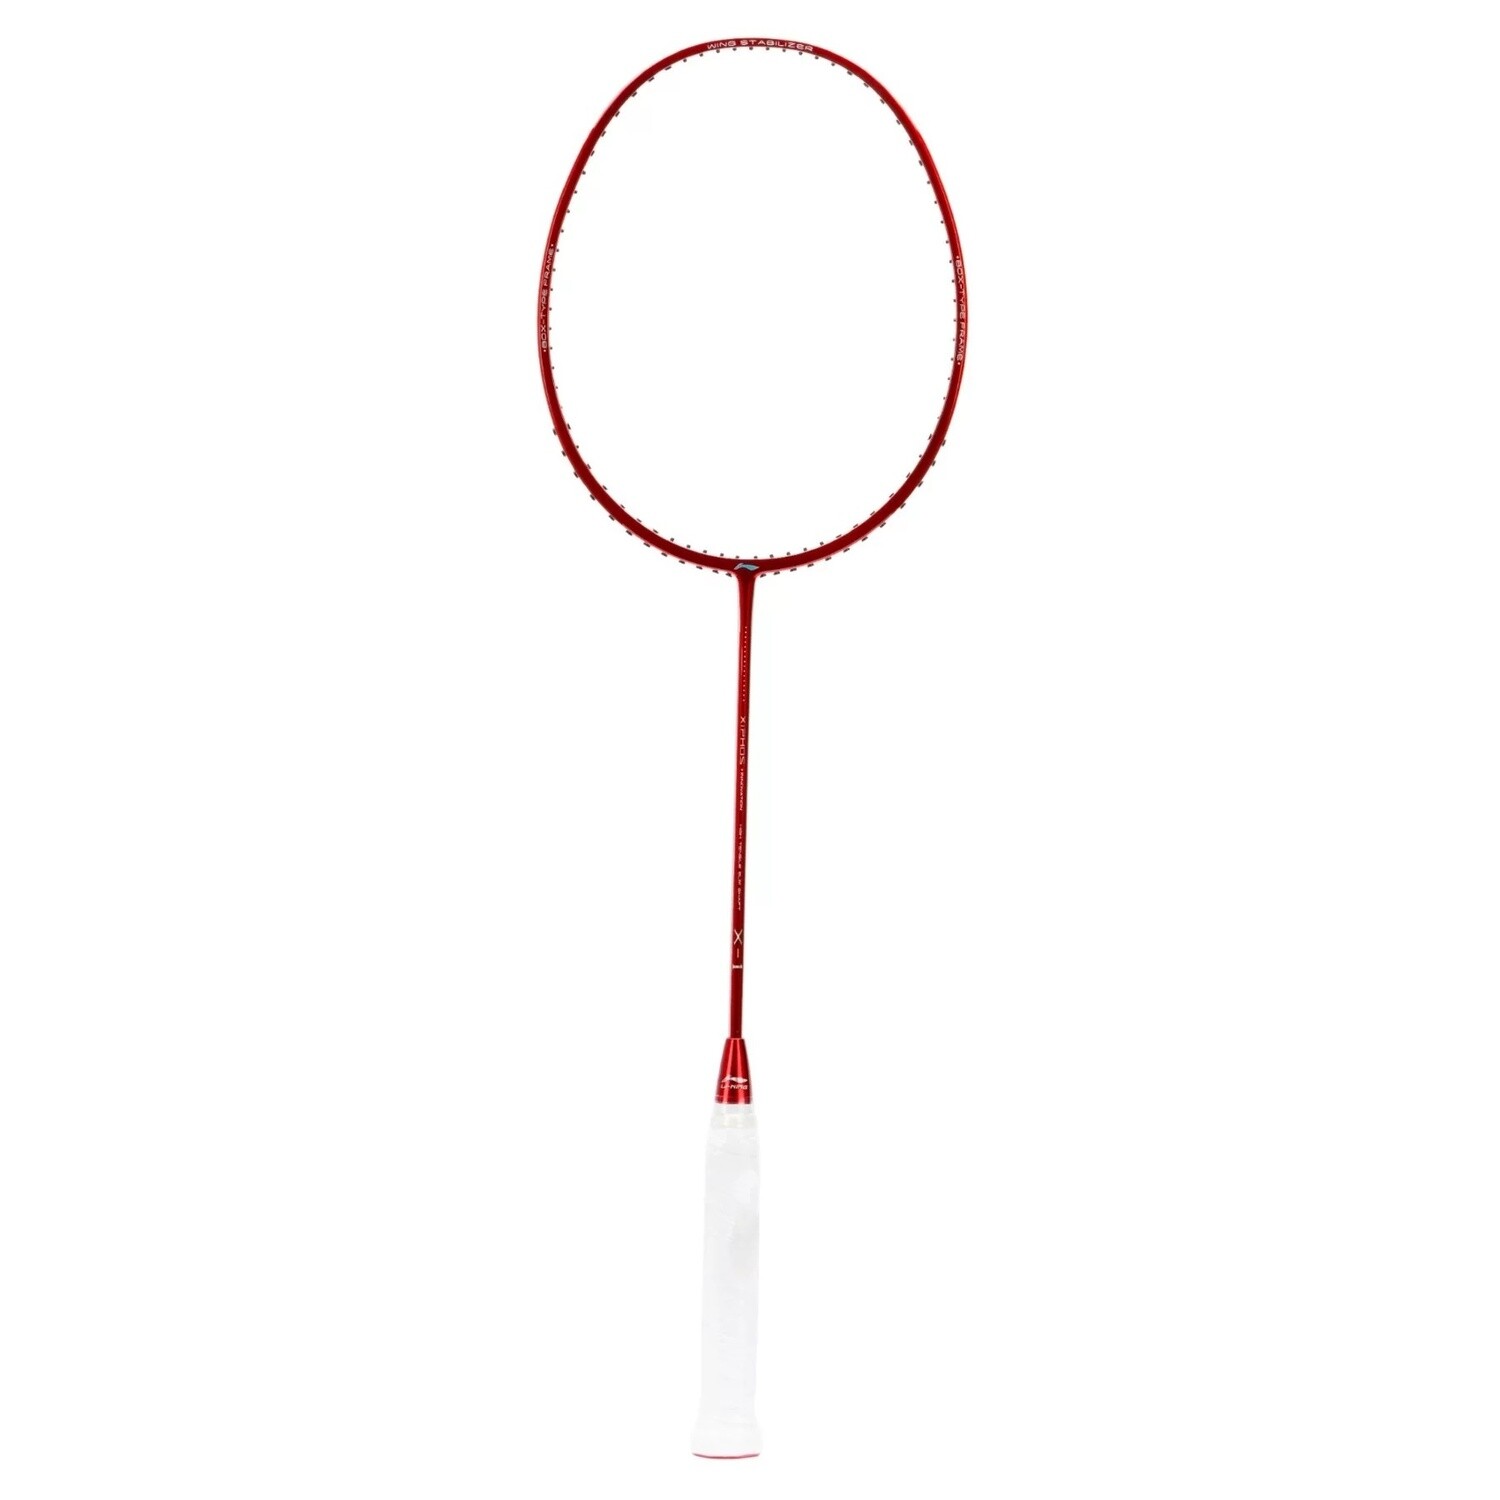 LI-NING XI-PHOS X1 Red Badminton Racket